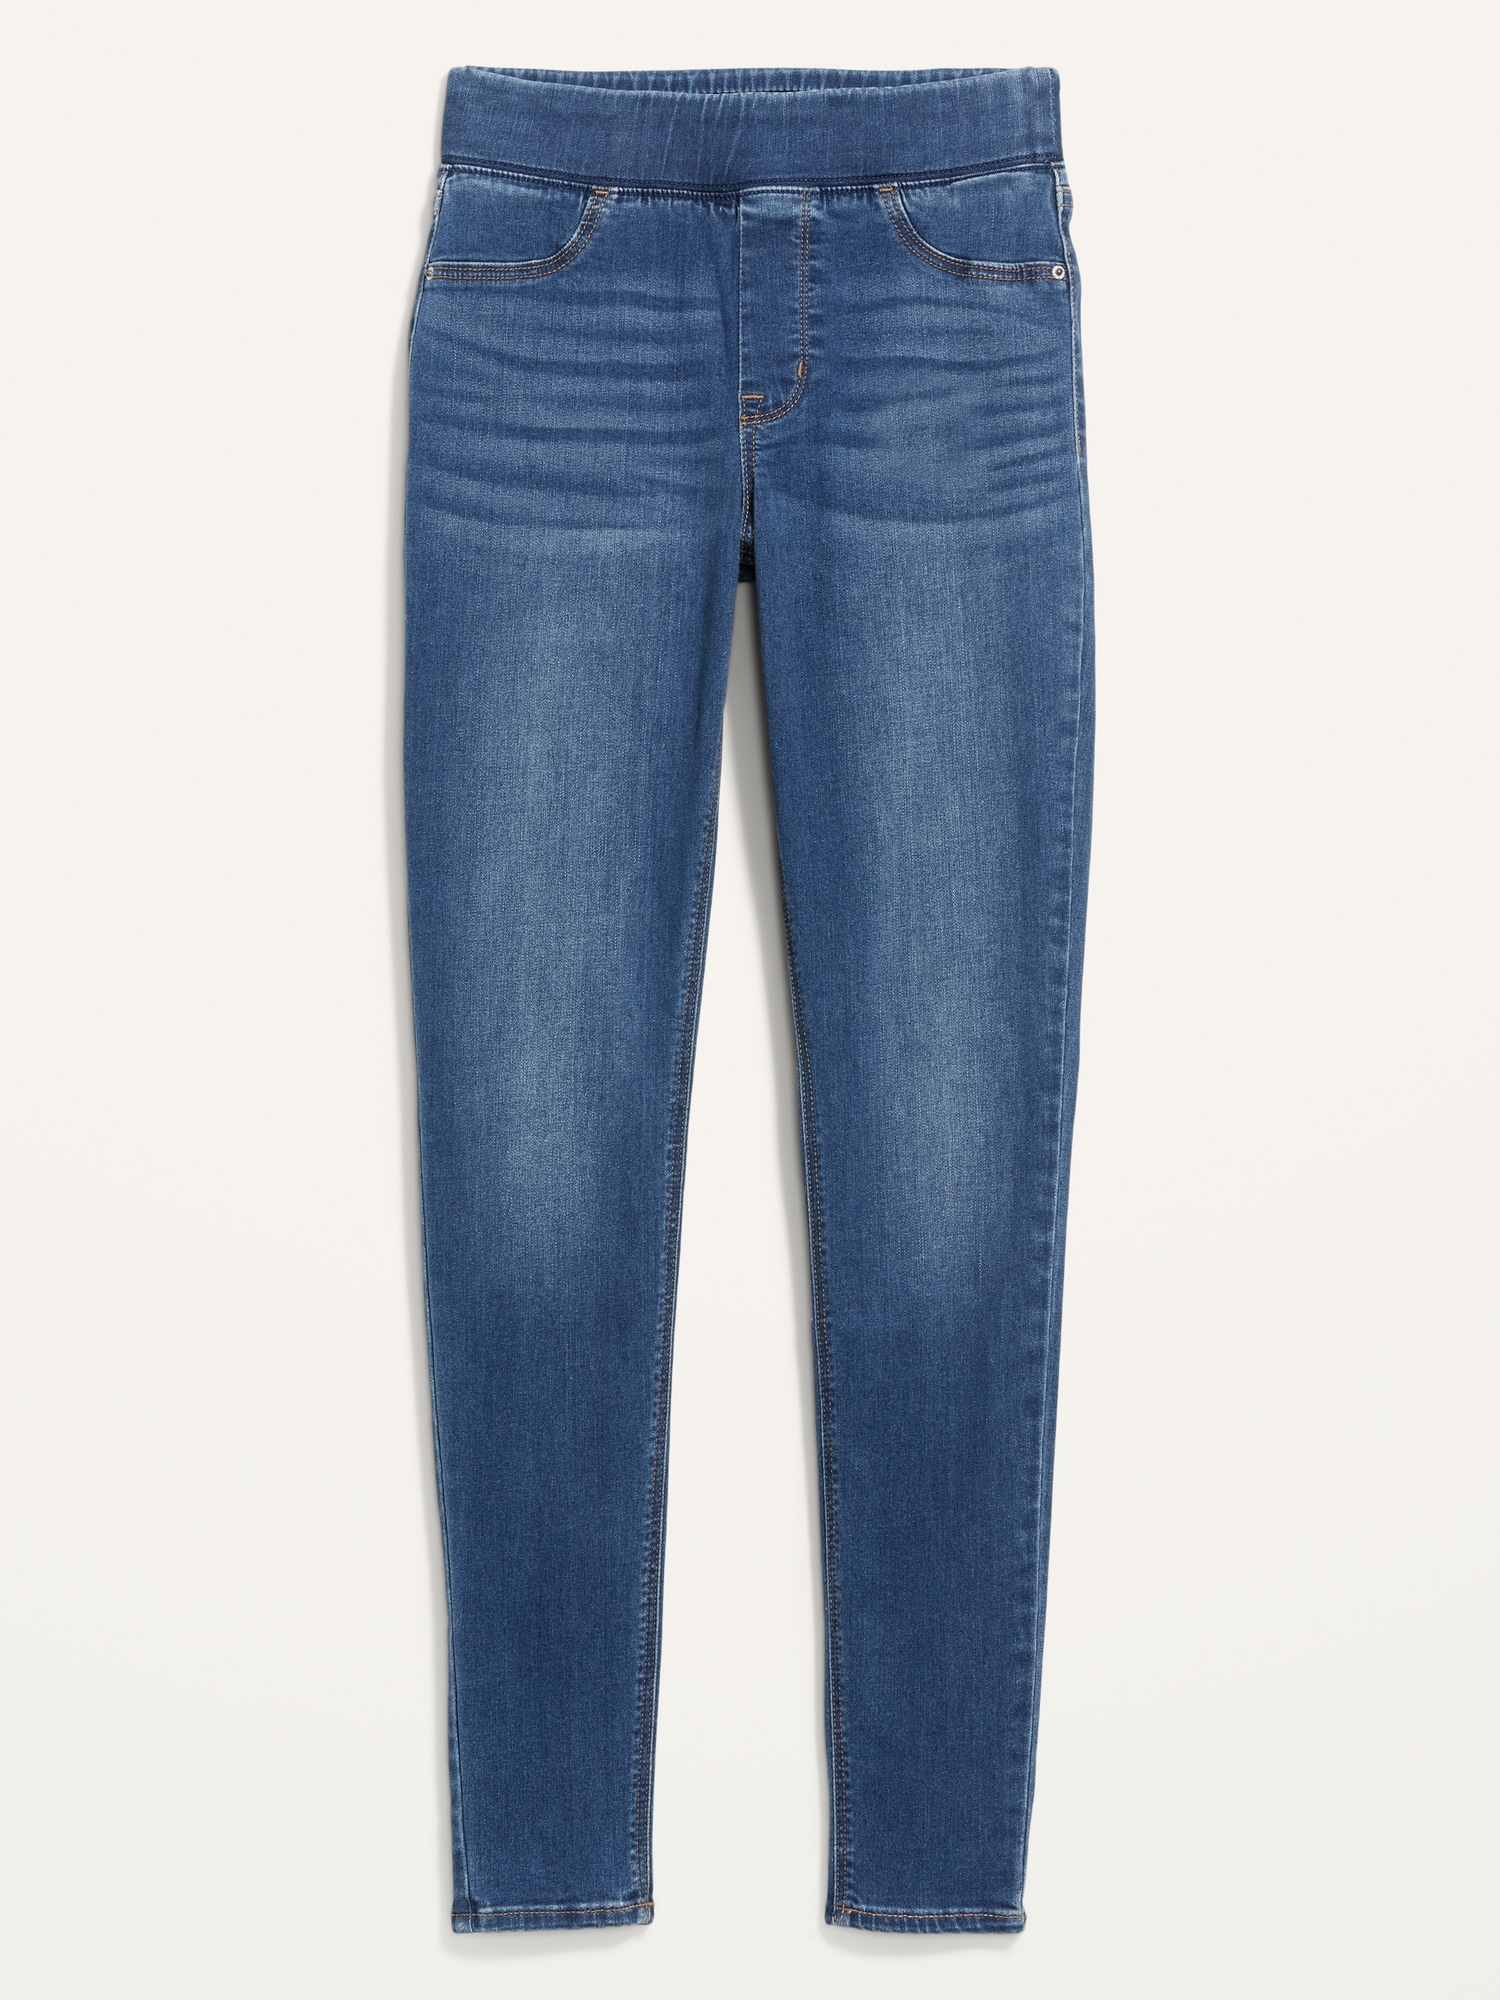 M/&S Como Nuevo Super Skinny Jeans Jeggings//Talla 24 RRP £ 22.50